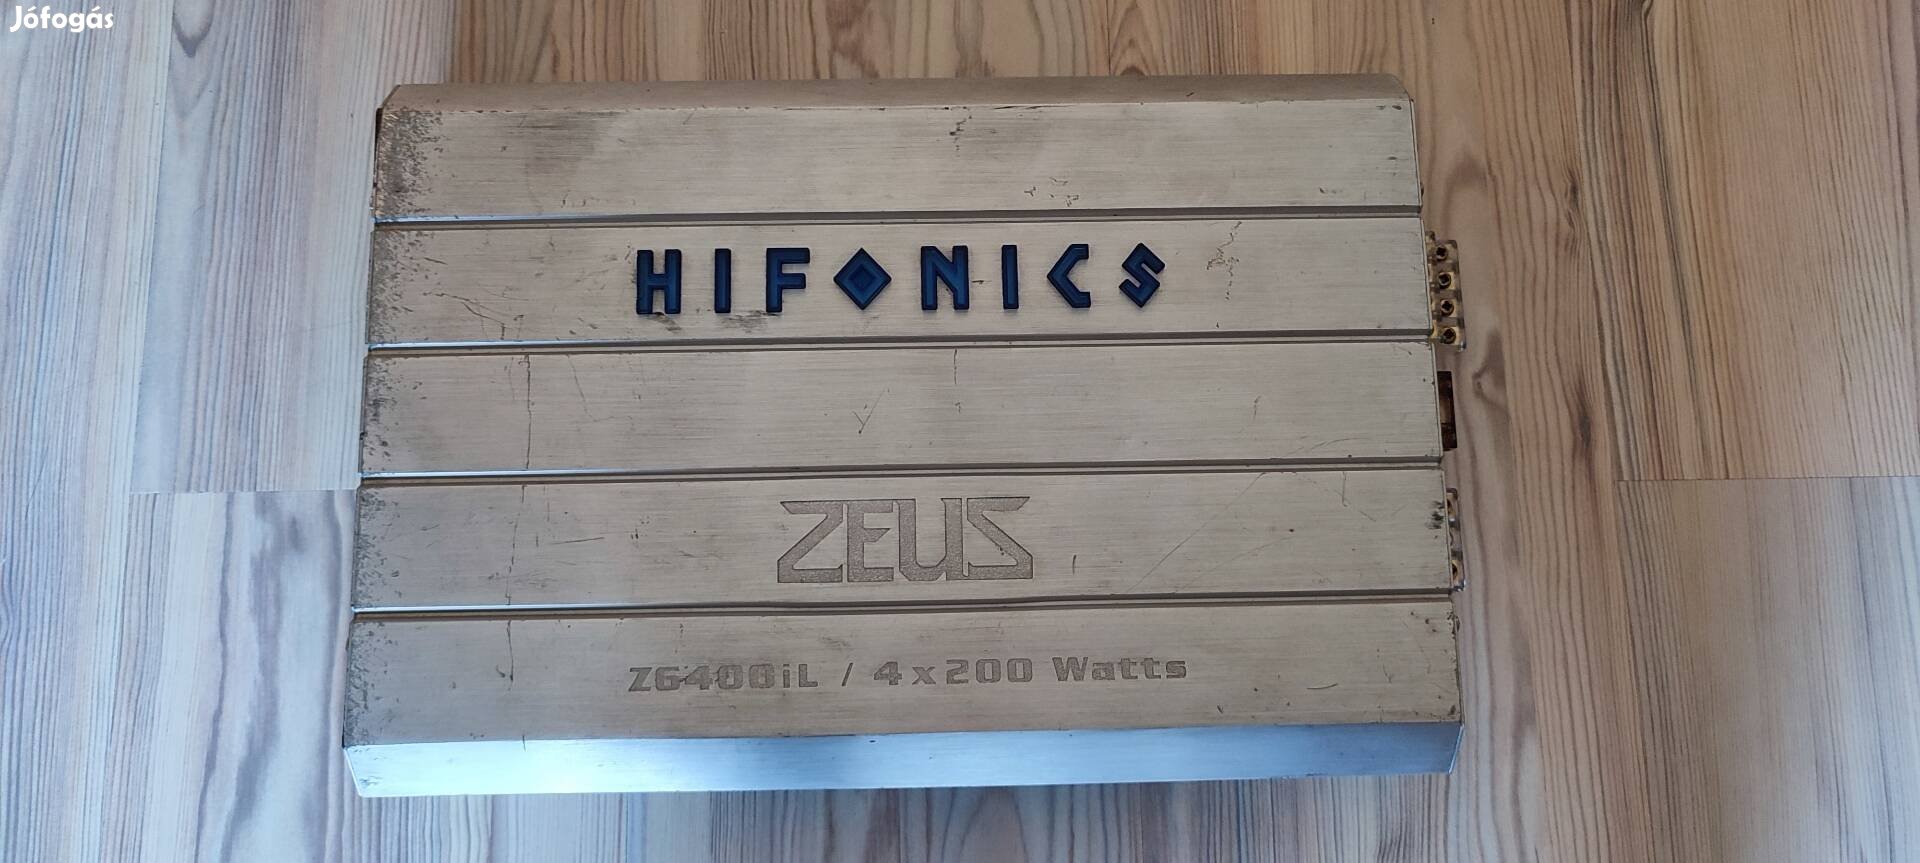 Eladó Hifonics Zeus Z6400il